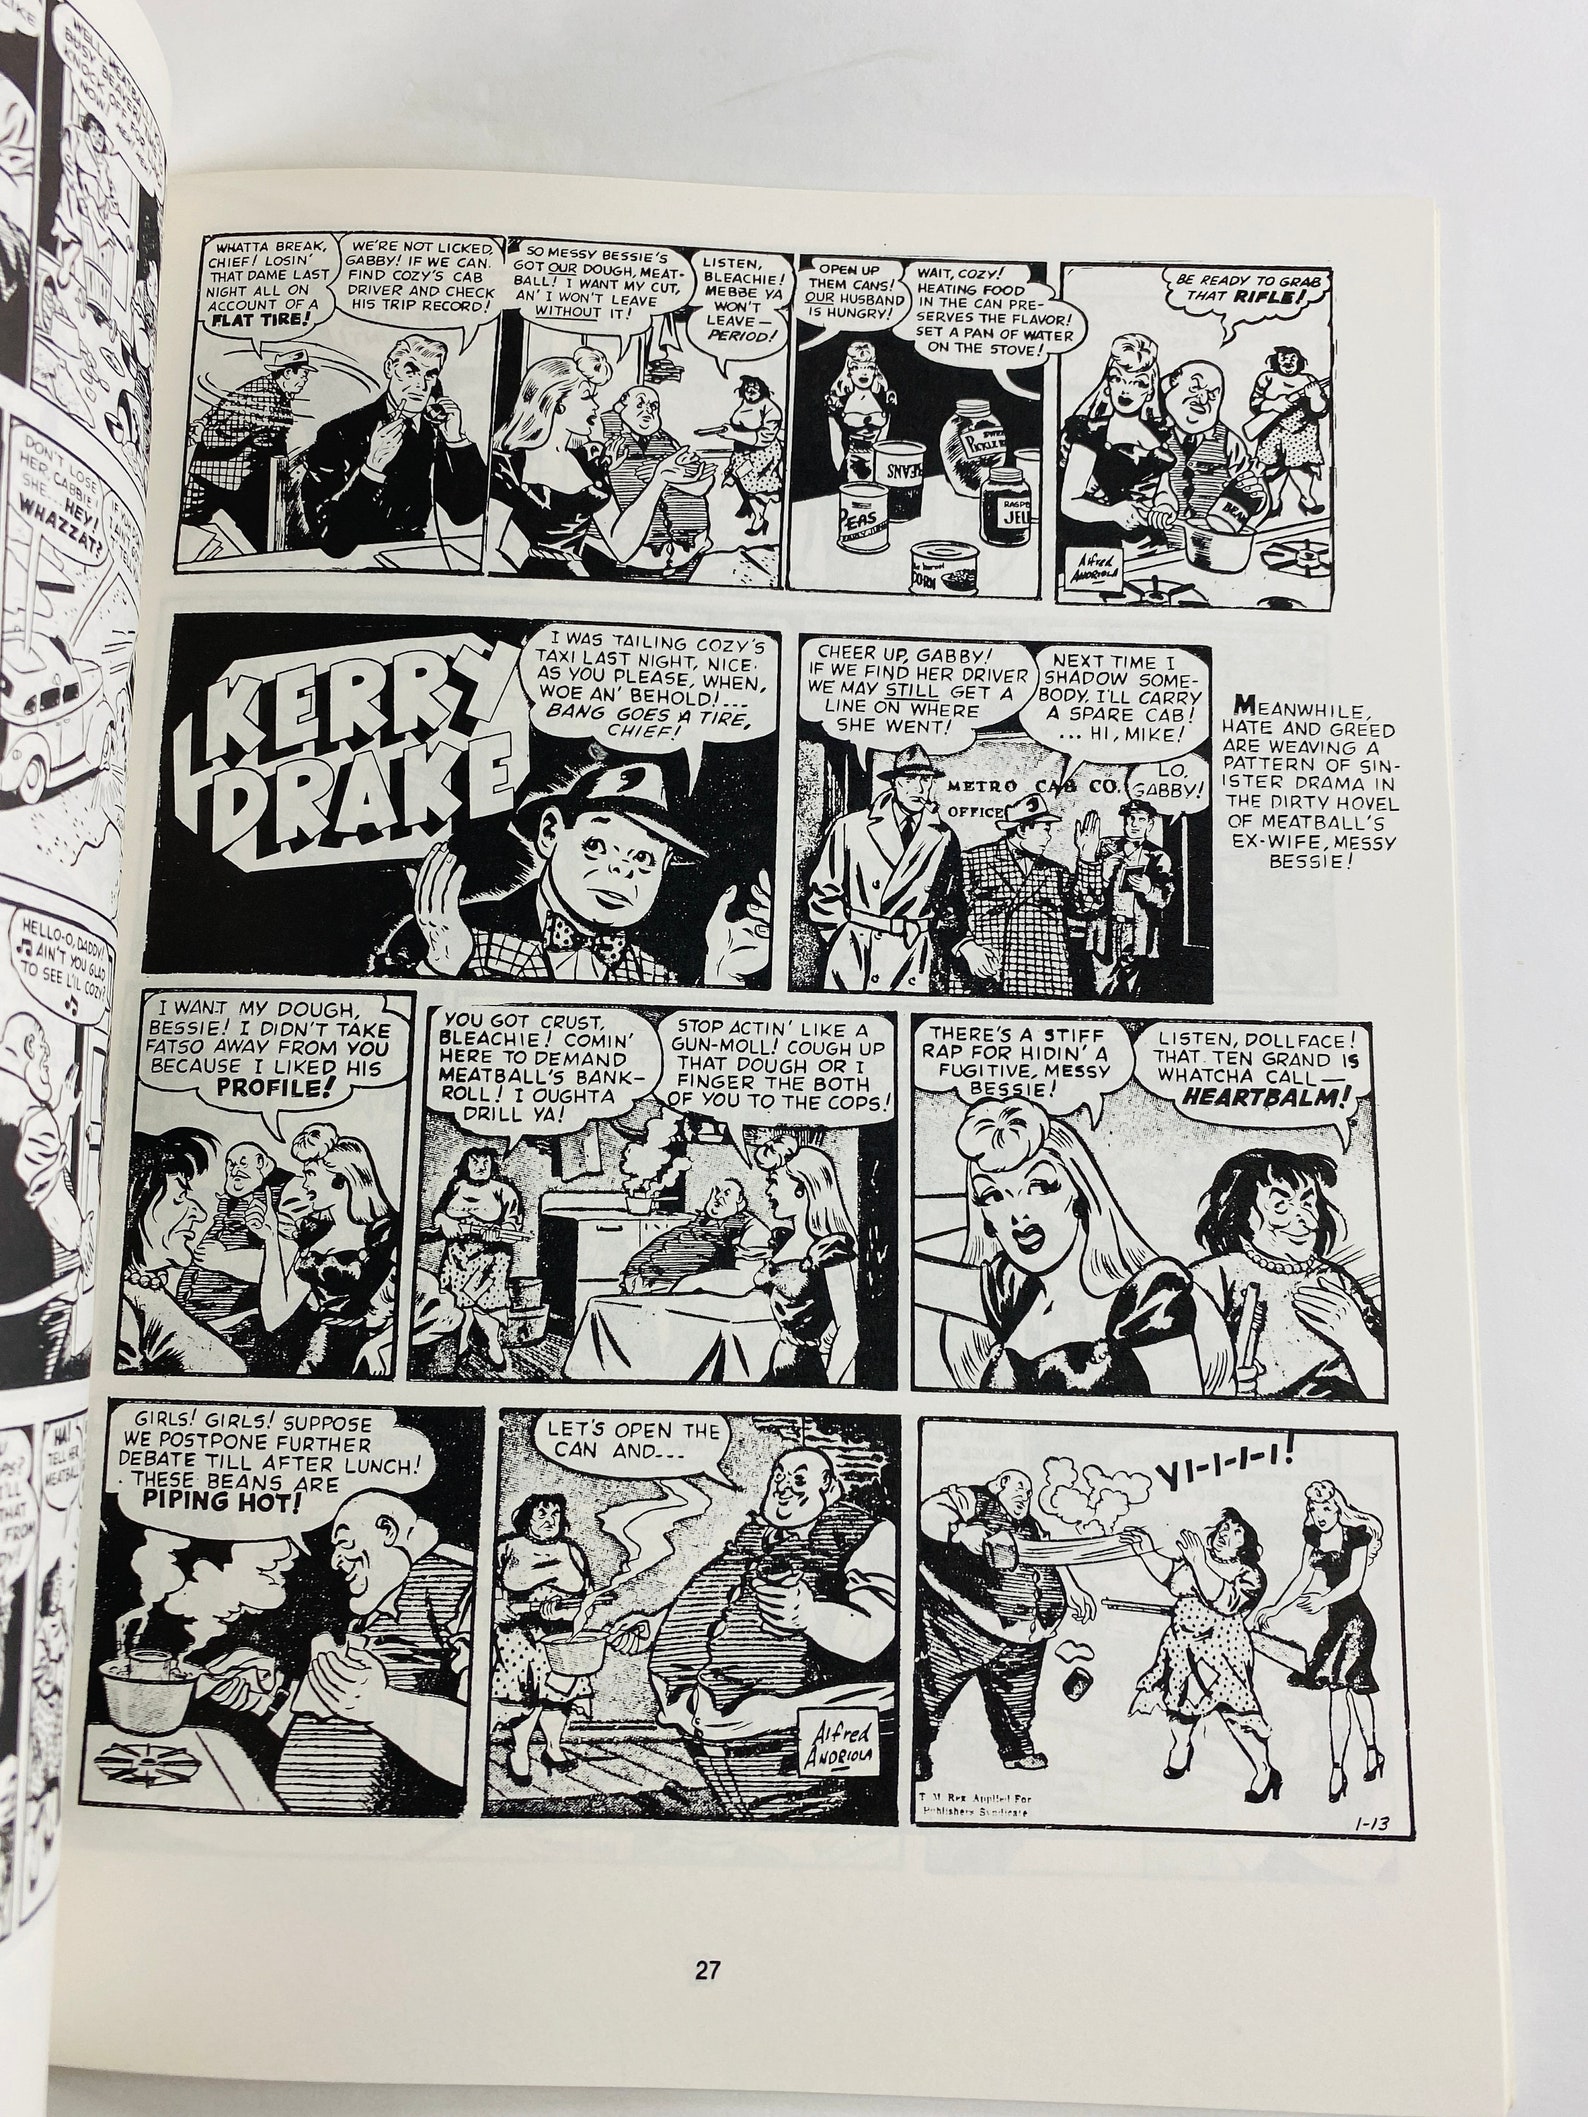 1987 Kerry Drake Vintage Paperback Comic Book 1946 Anti-drug | Etsy